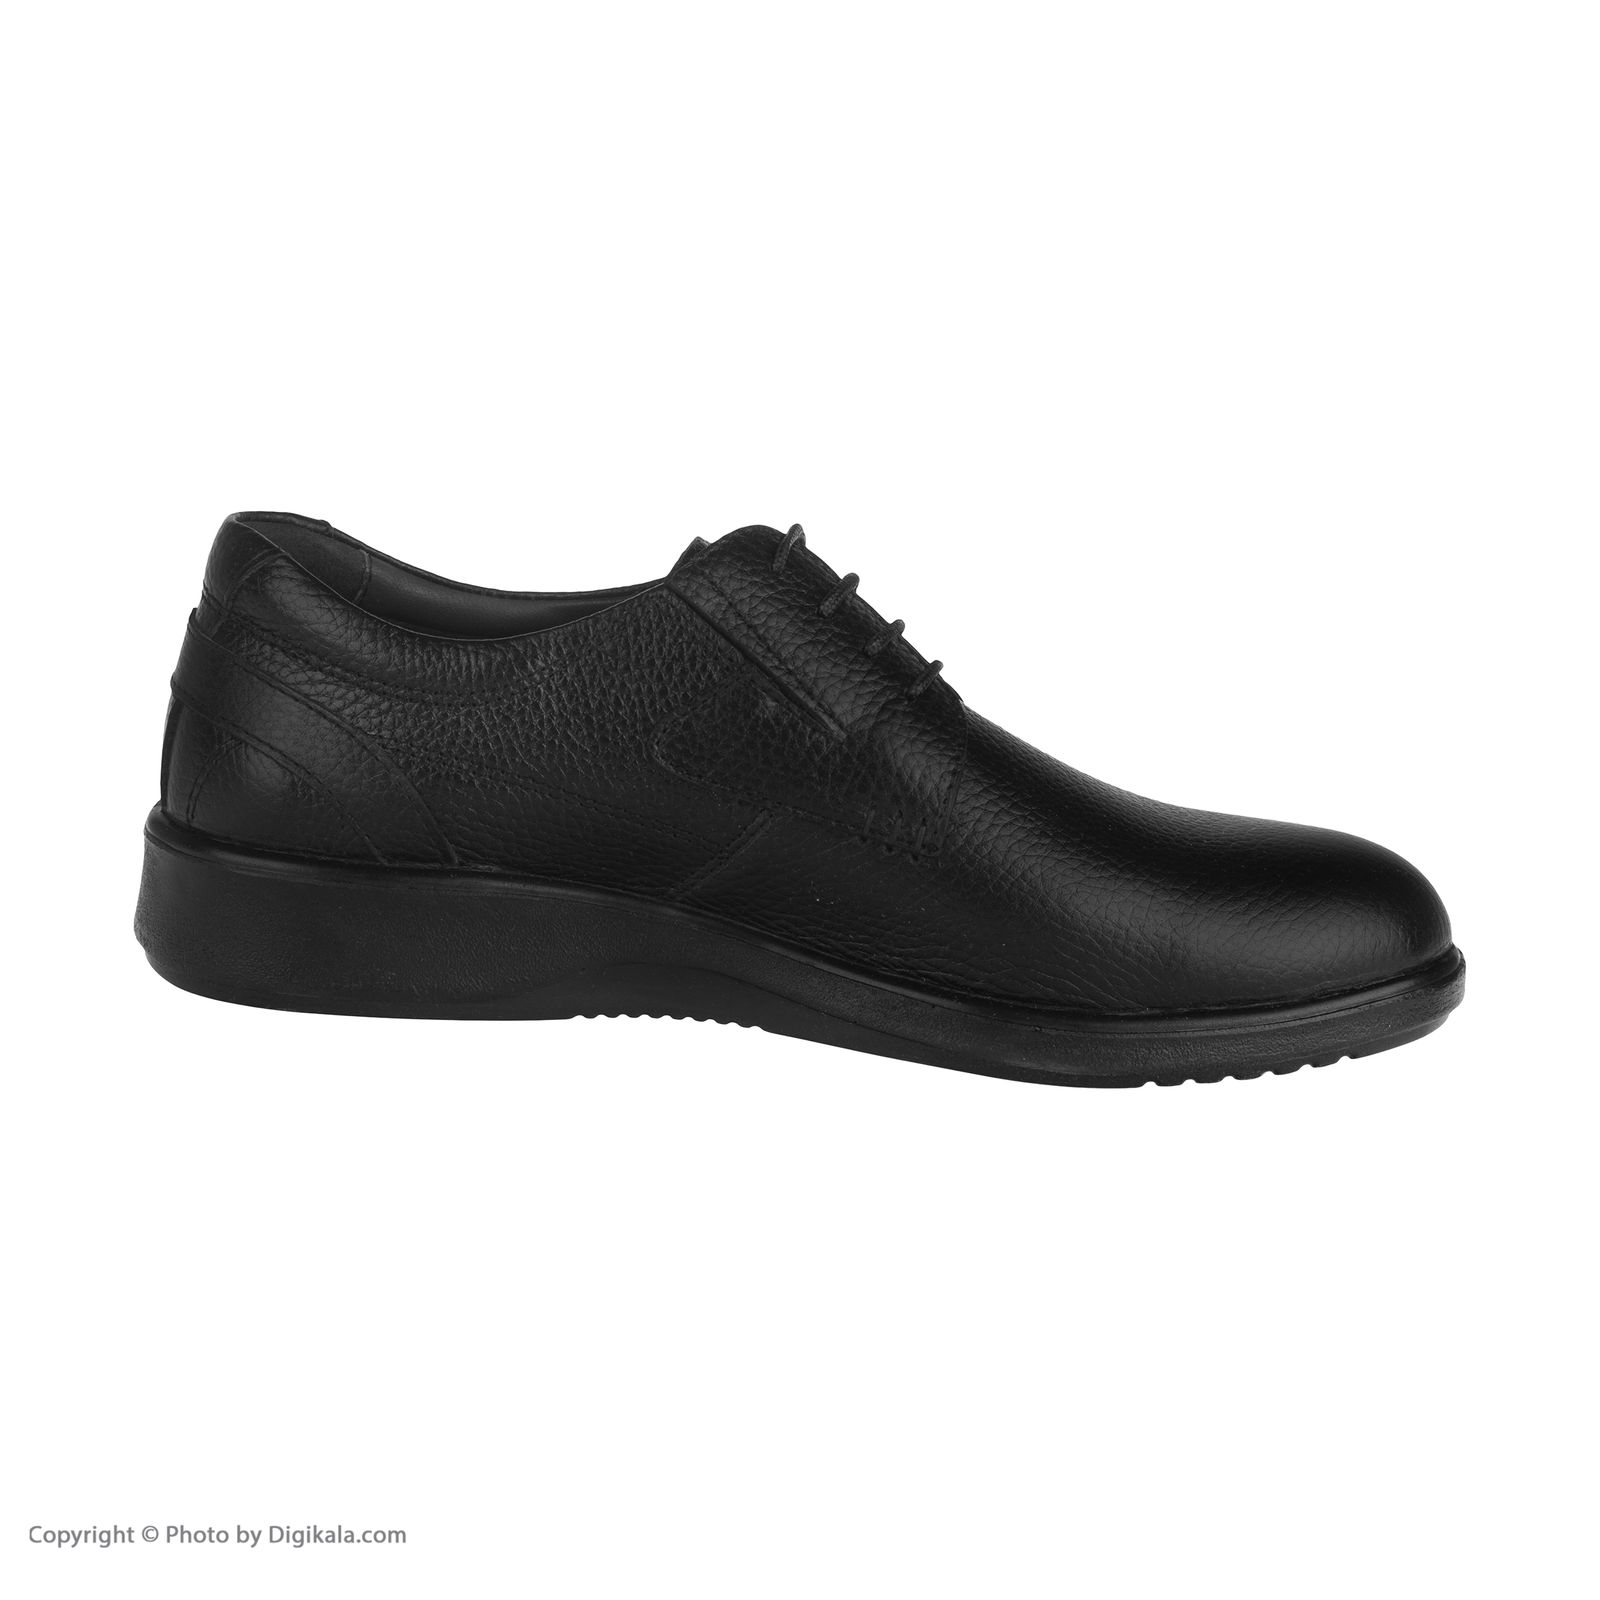  کفش روزمره مردانه ساتین مدل 7249b503101 -  - 5